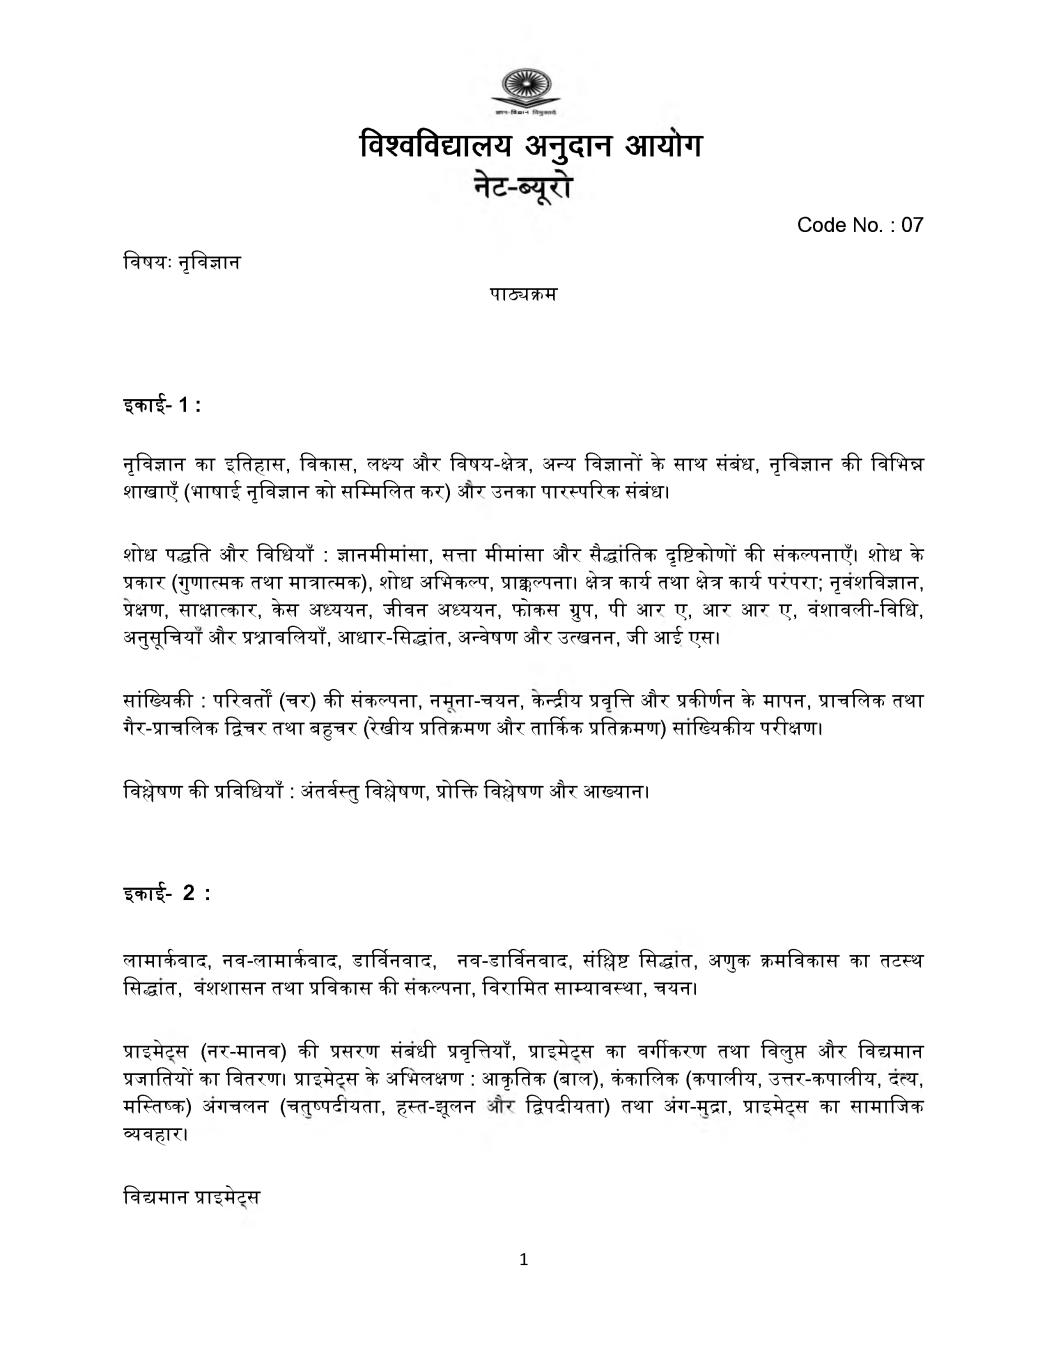 UGC NET Syllabus for Anthropology 2020 in Hindi - Page 1